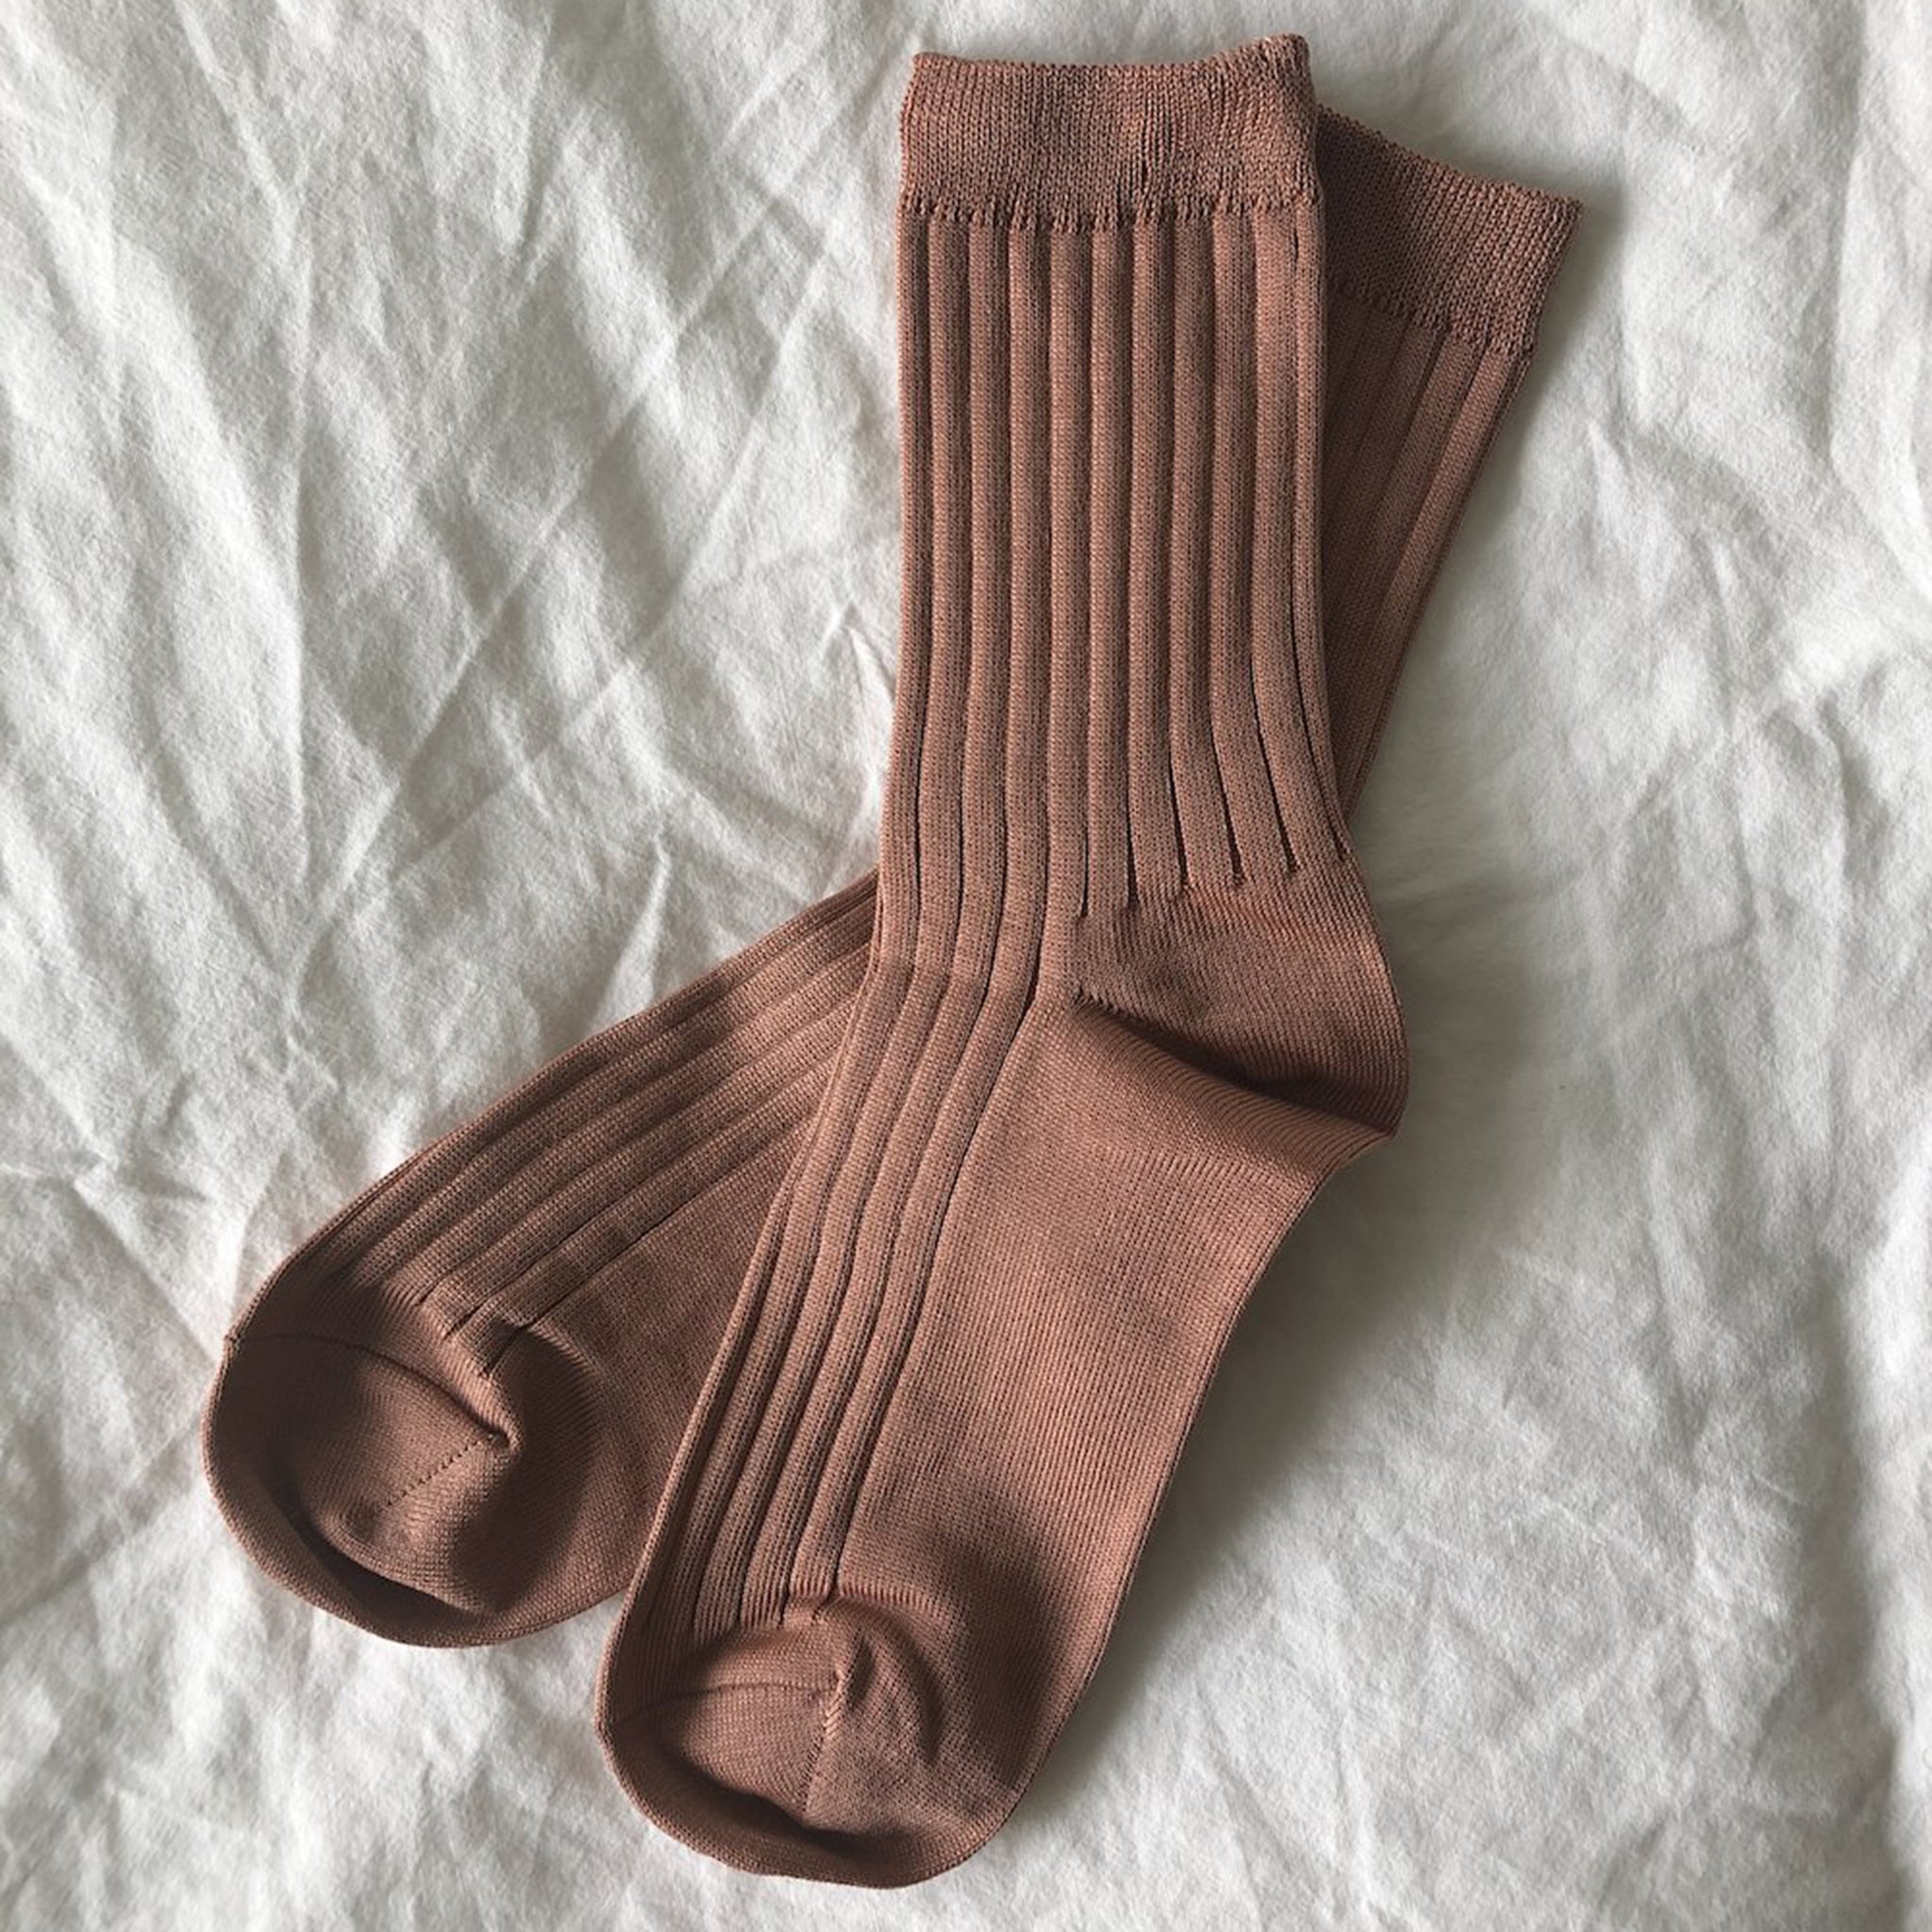 Ribbed Socks - Nude Peach